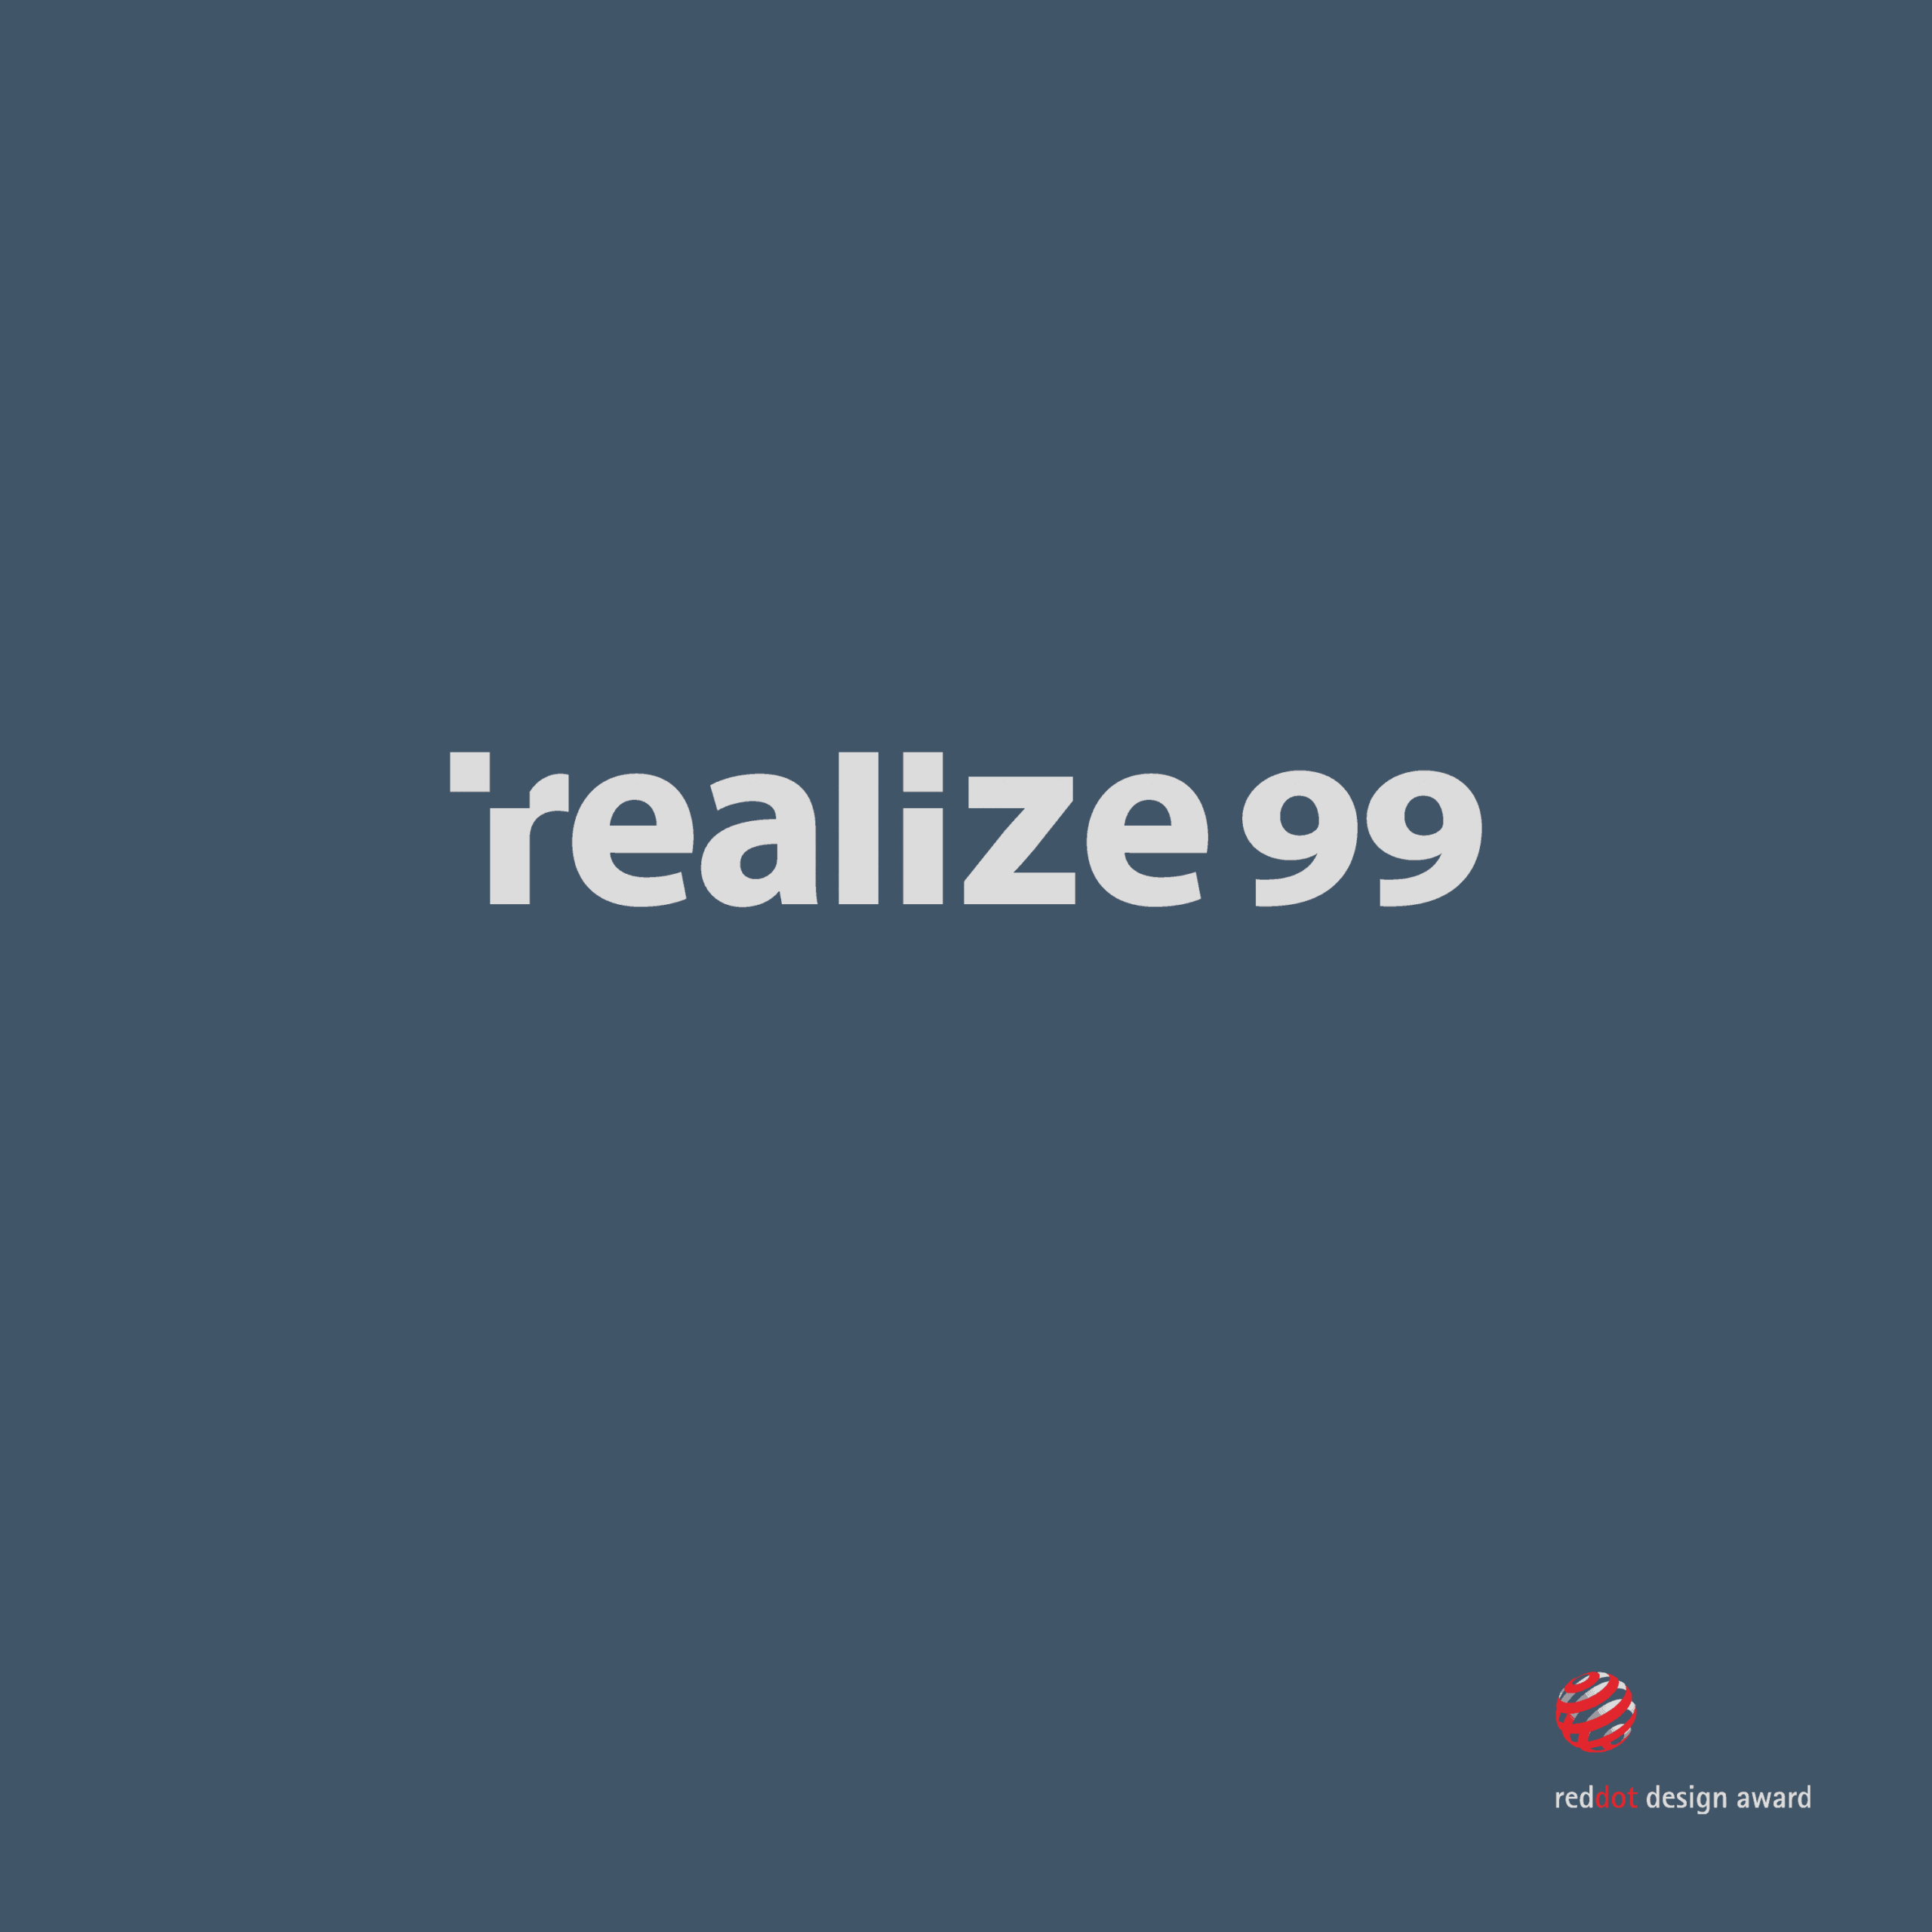 Logotype → realize99, 2003